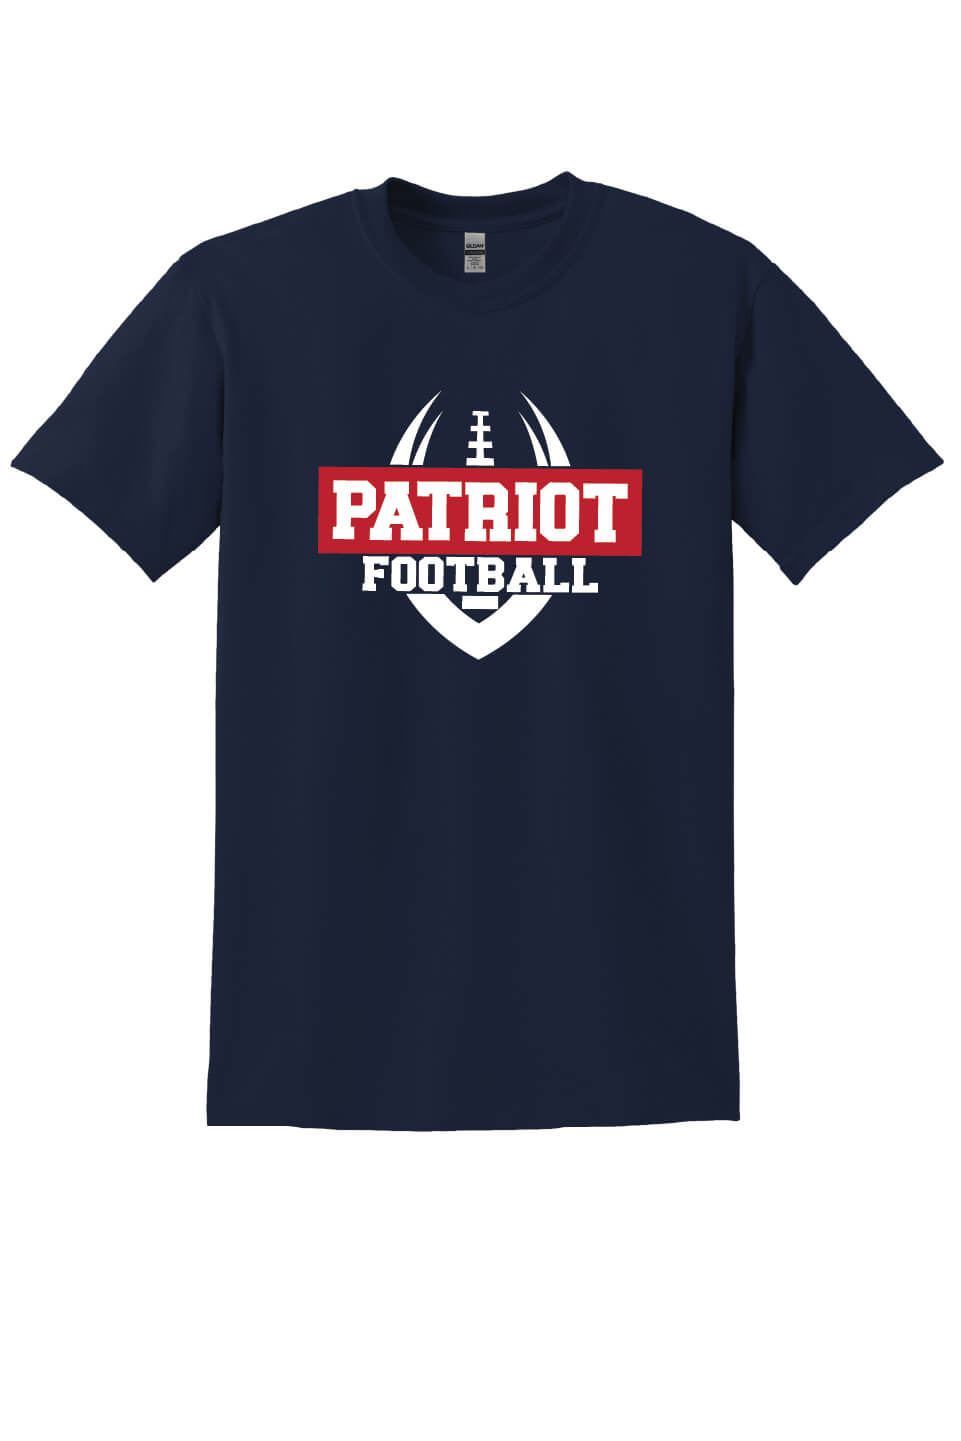 Patriot Football Short Sleeve T-shirt navy